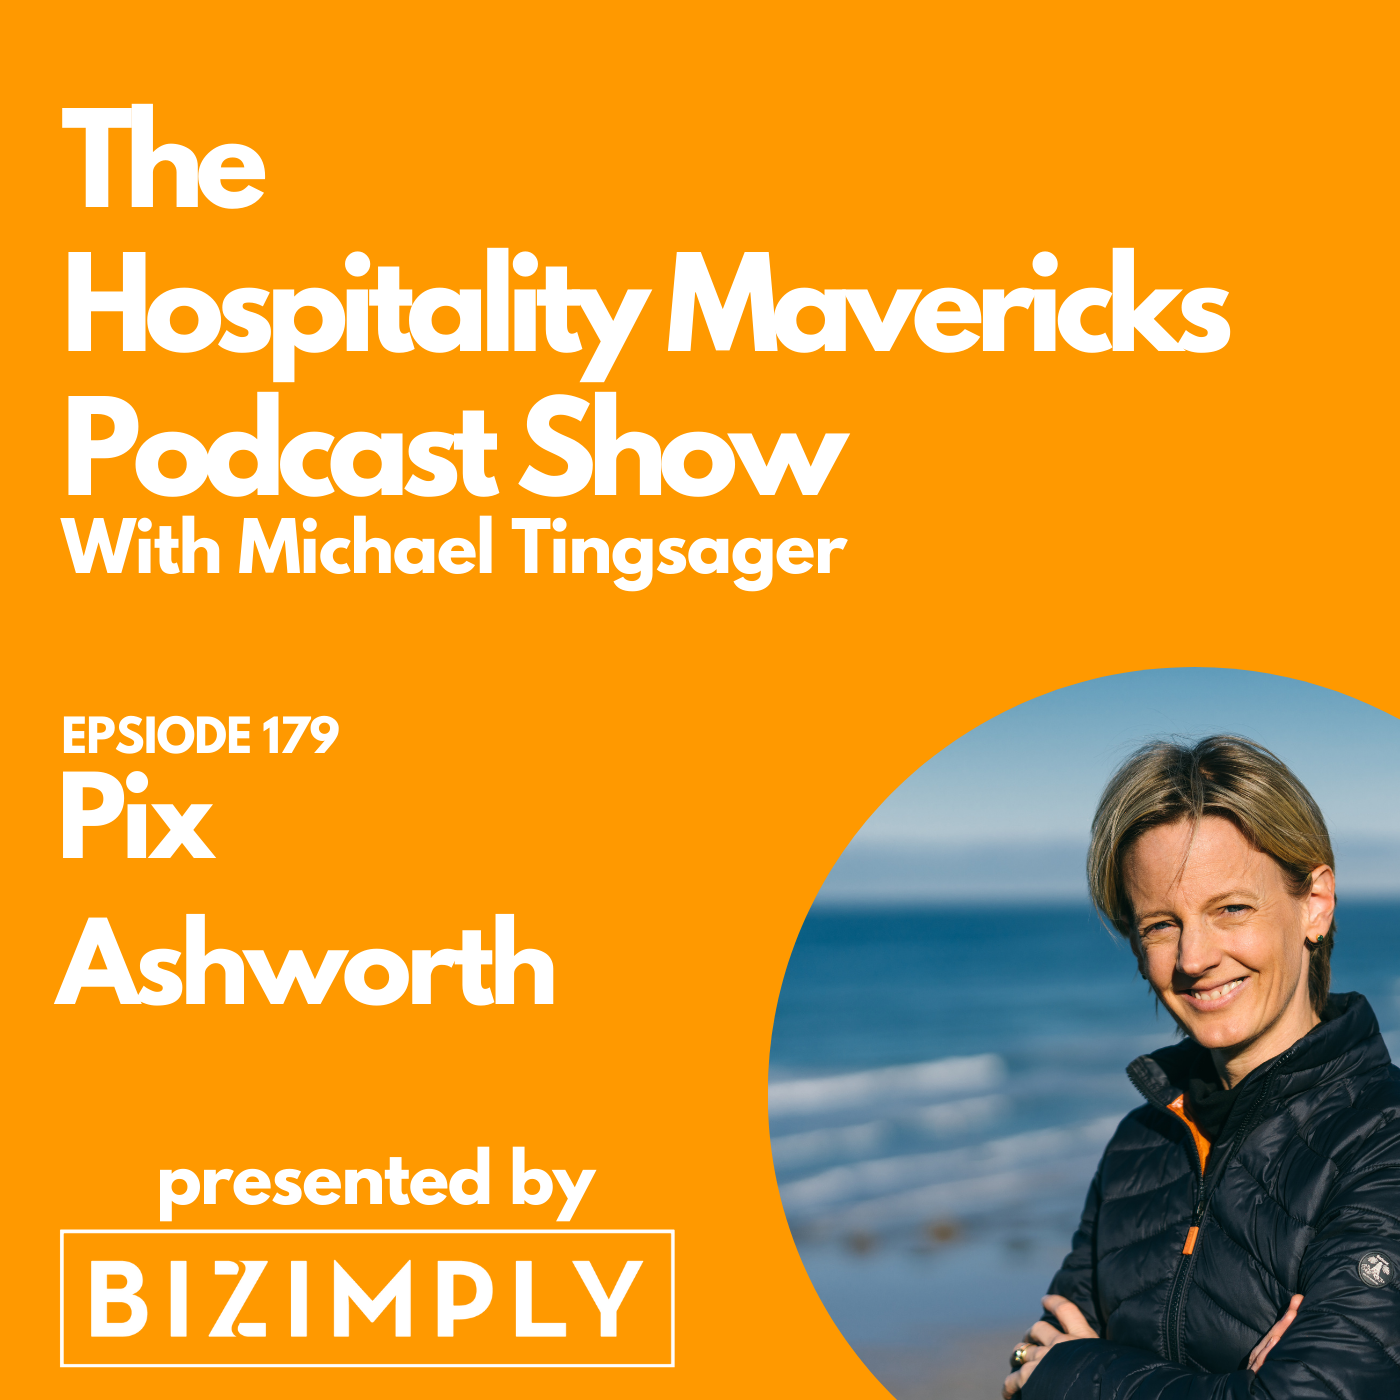 Artwork for podcast Hospitality Mavericks Podcast